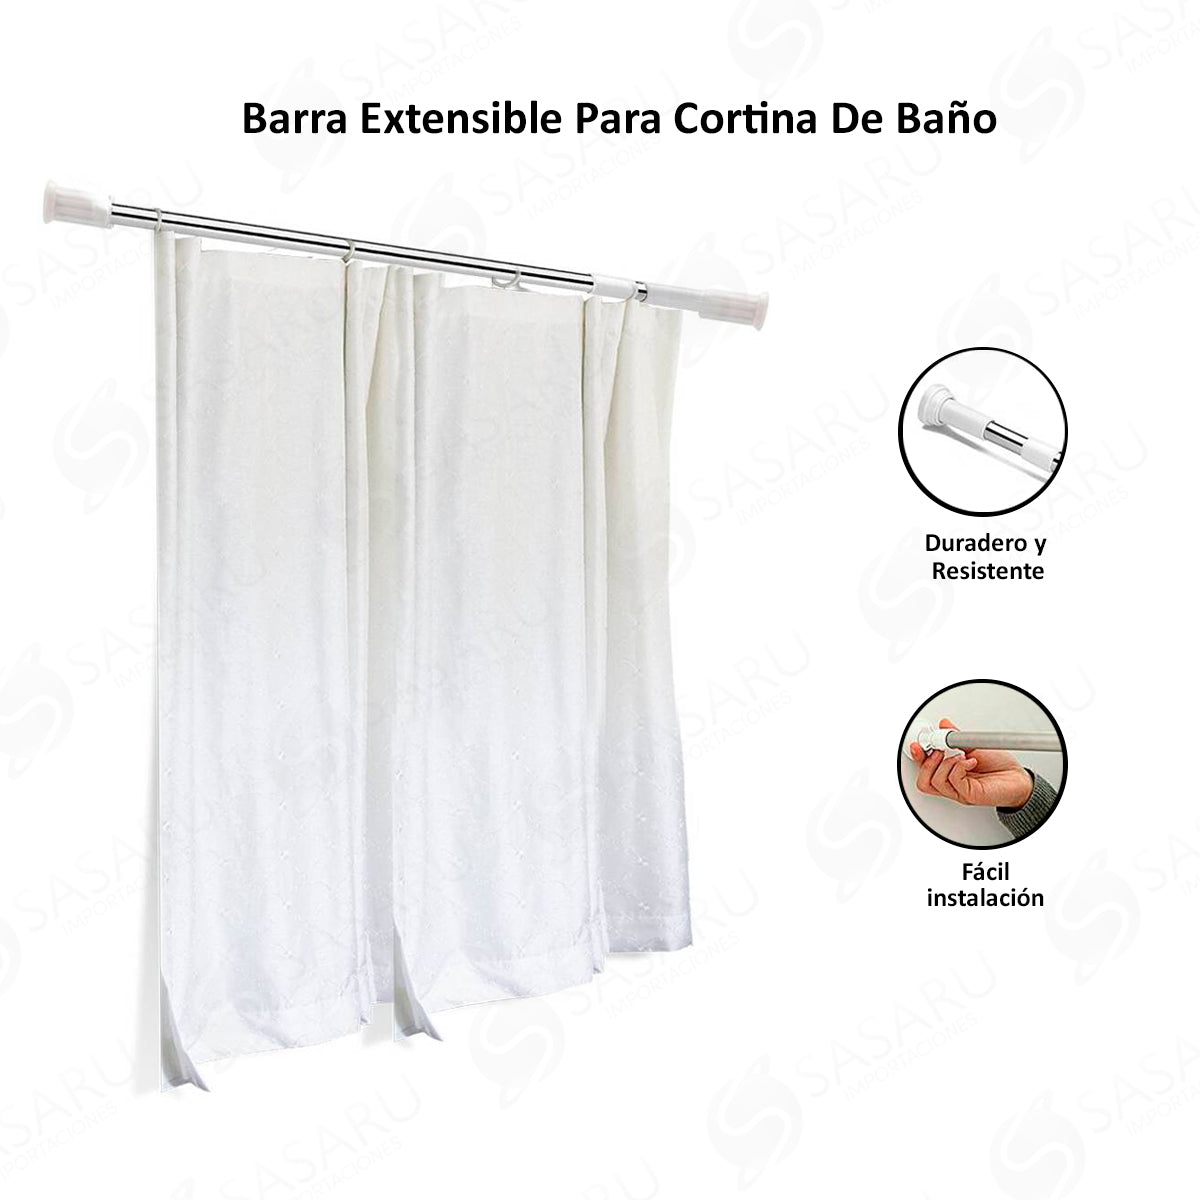 🥇 Barra cortina extensible para baños al mejor precio con envío